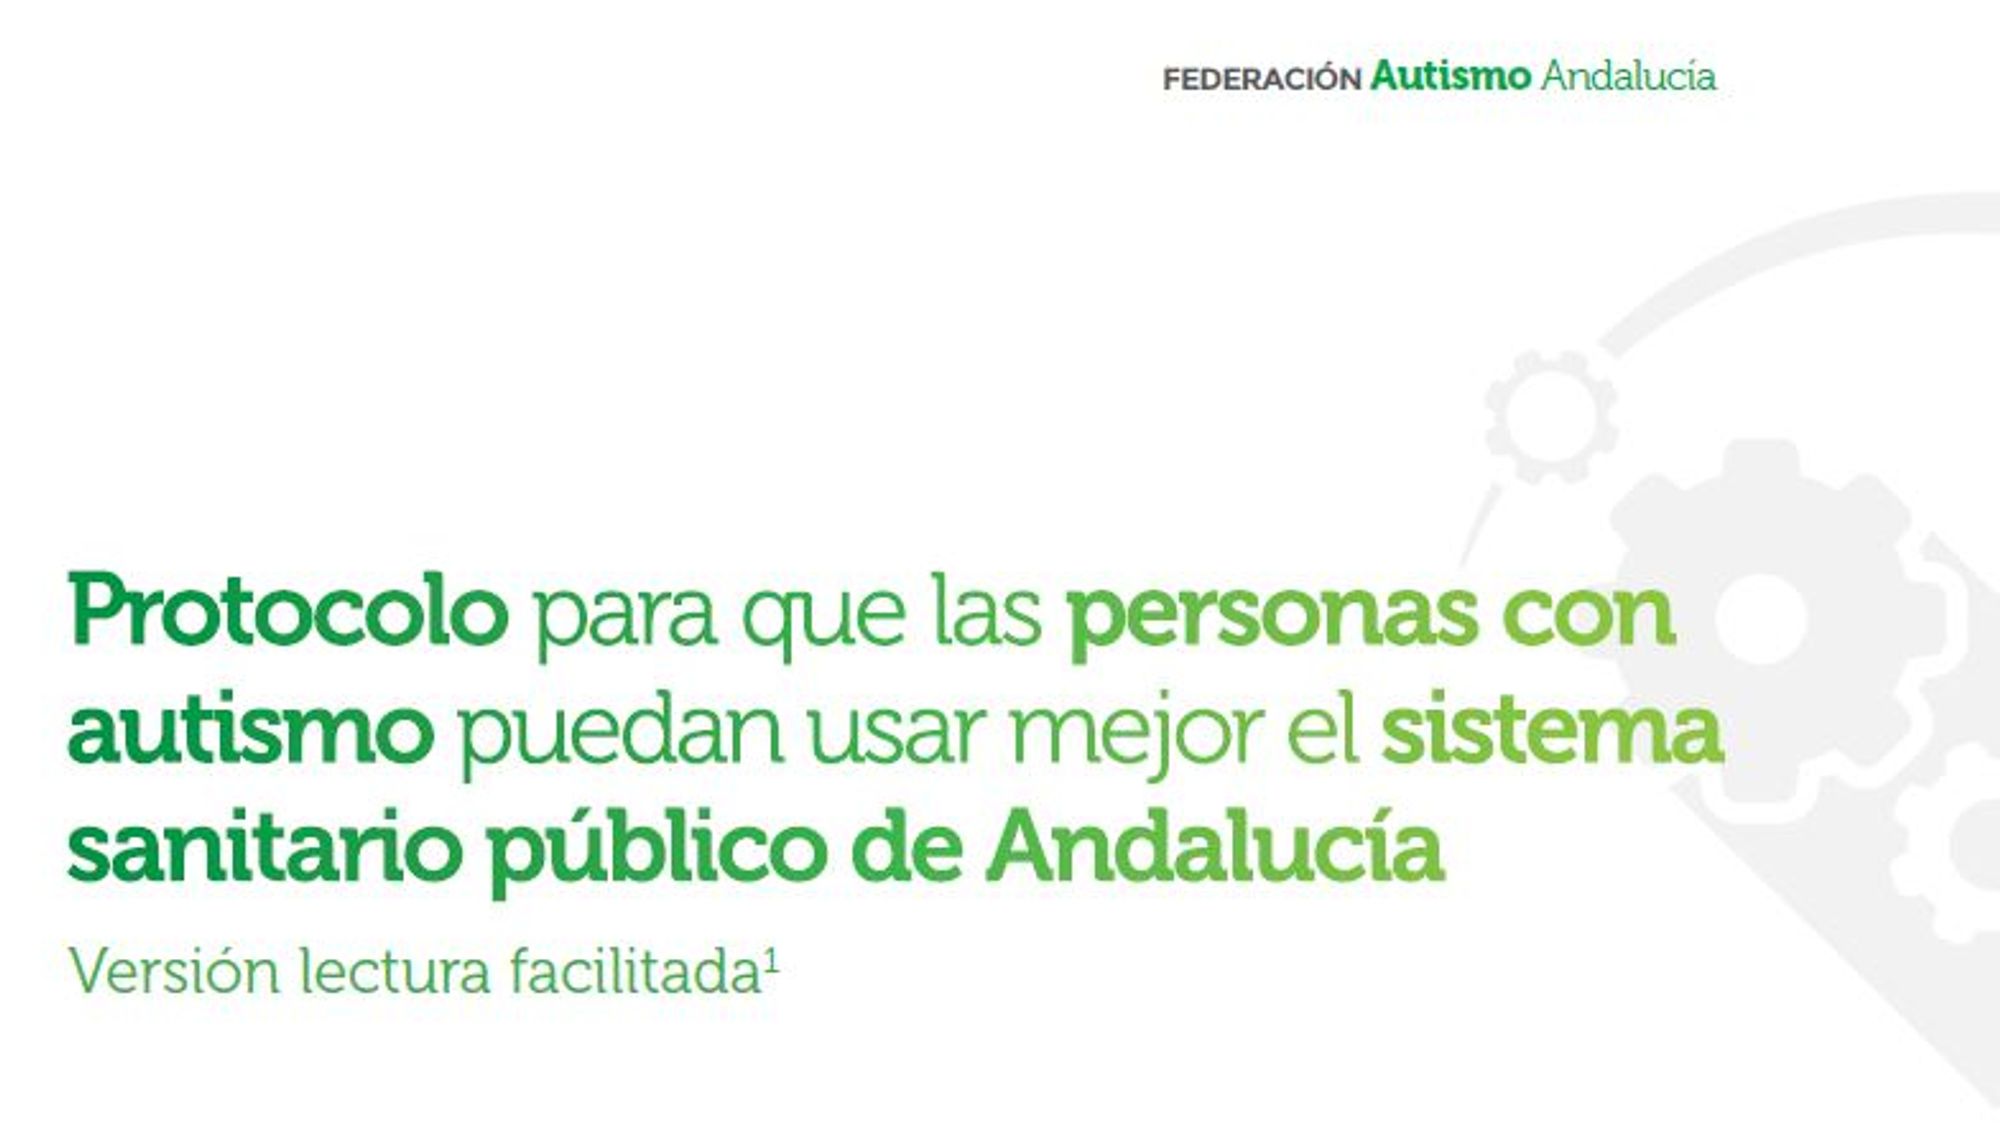 Protocolo para que las personas con autismo puedan usar mejor el sistema sanitario público de Andalucía. Versión lectura facilitada.